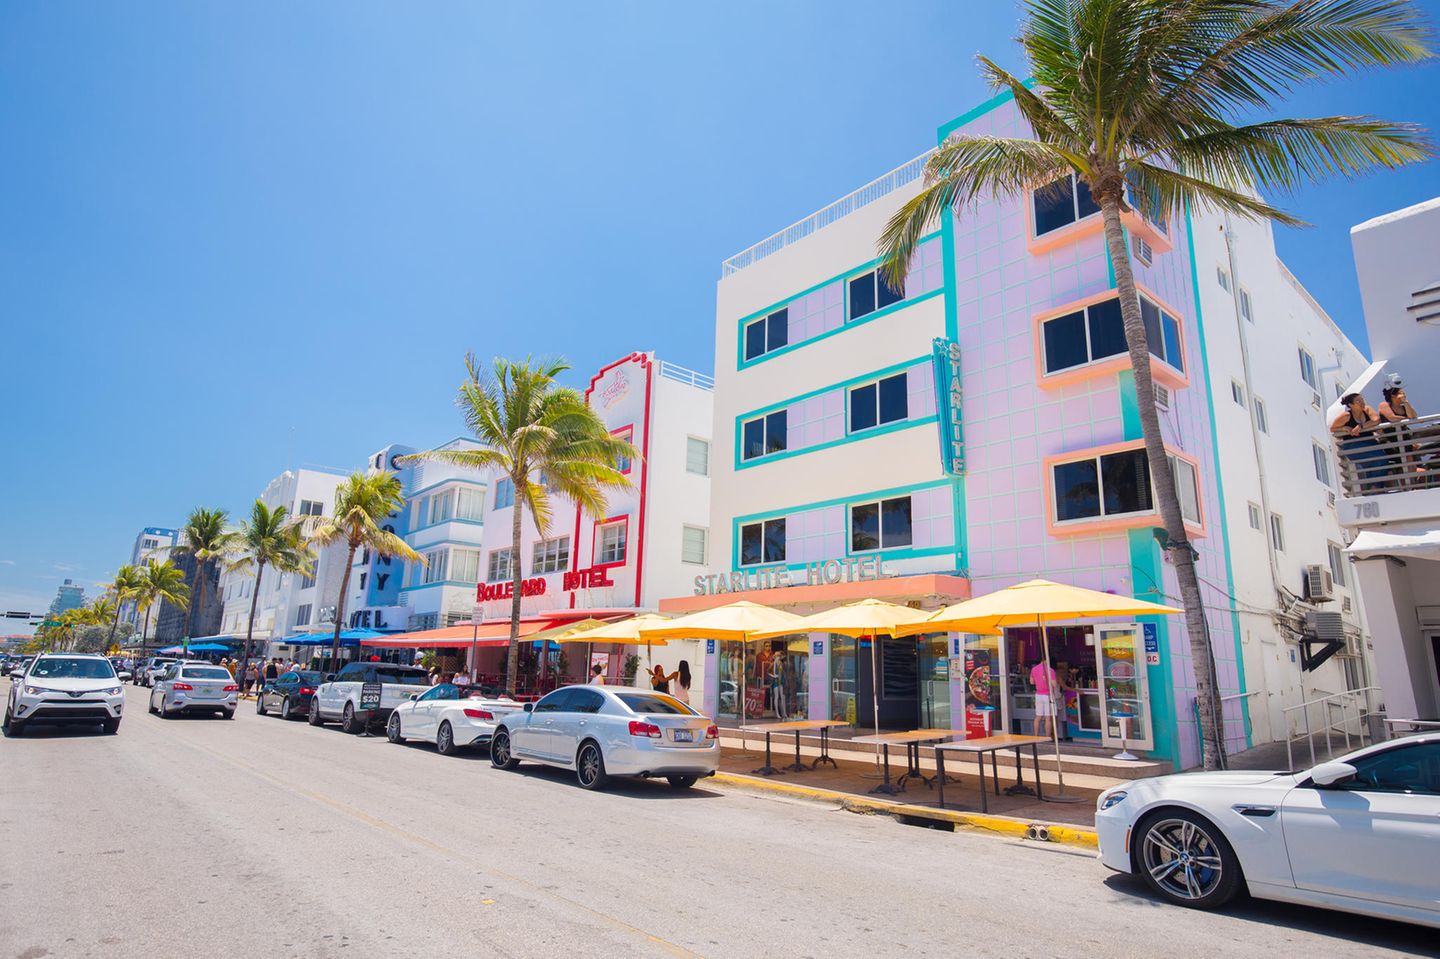 Reiseziele für Mädelstrips: Buntes Hotel in Miami